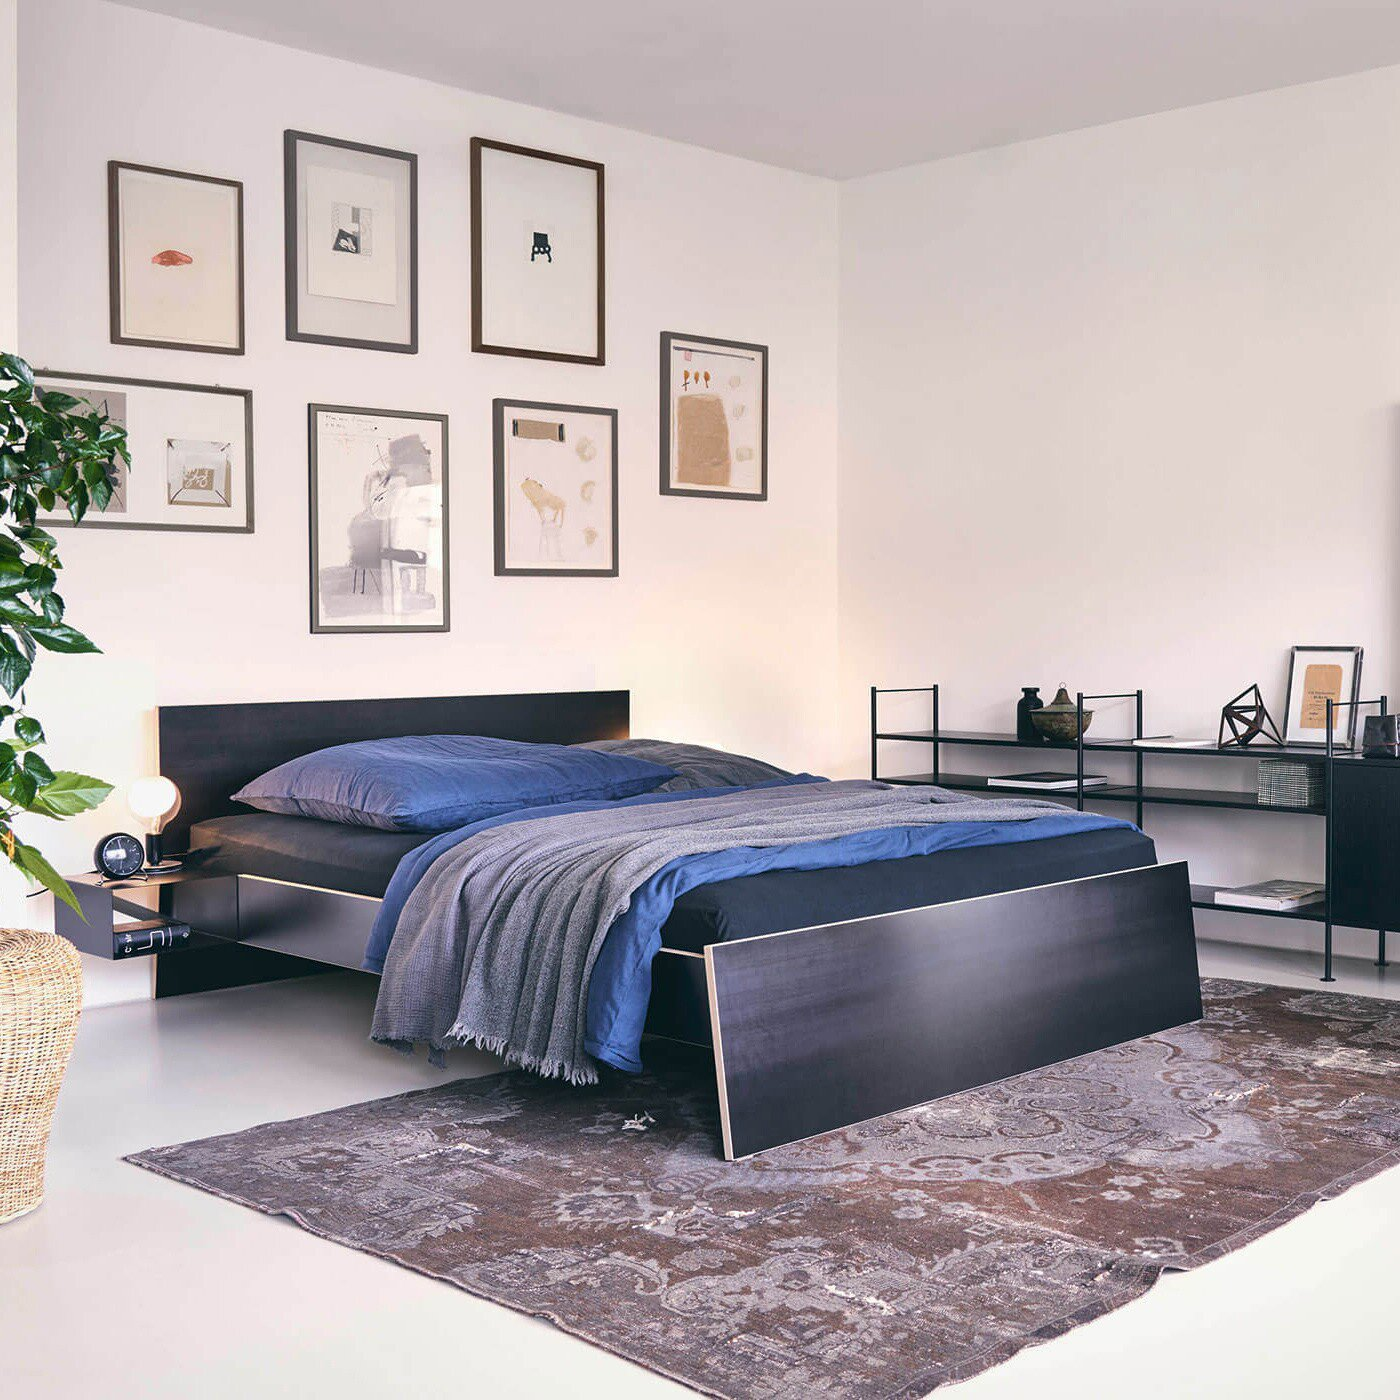 Habitación dormitorio luminosa con alfombra marrón moderna cama en negro y azul y composición de cuadros de diversas medidas en el respaldo